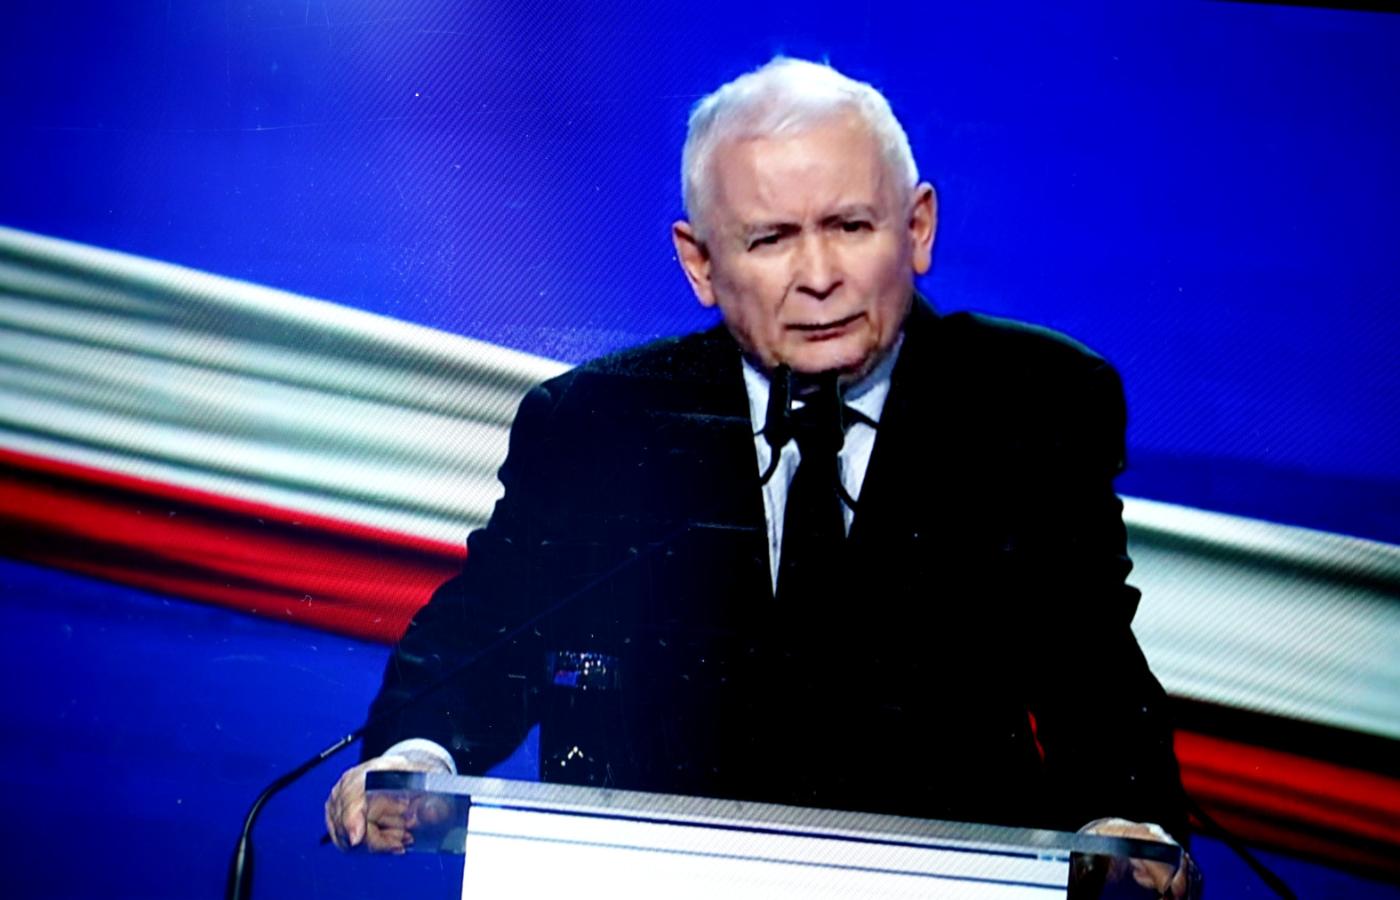 Prezes PiS Jarosław Kaczyński podczas prezentacji Polskiego Ładu